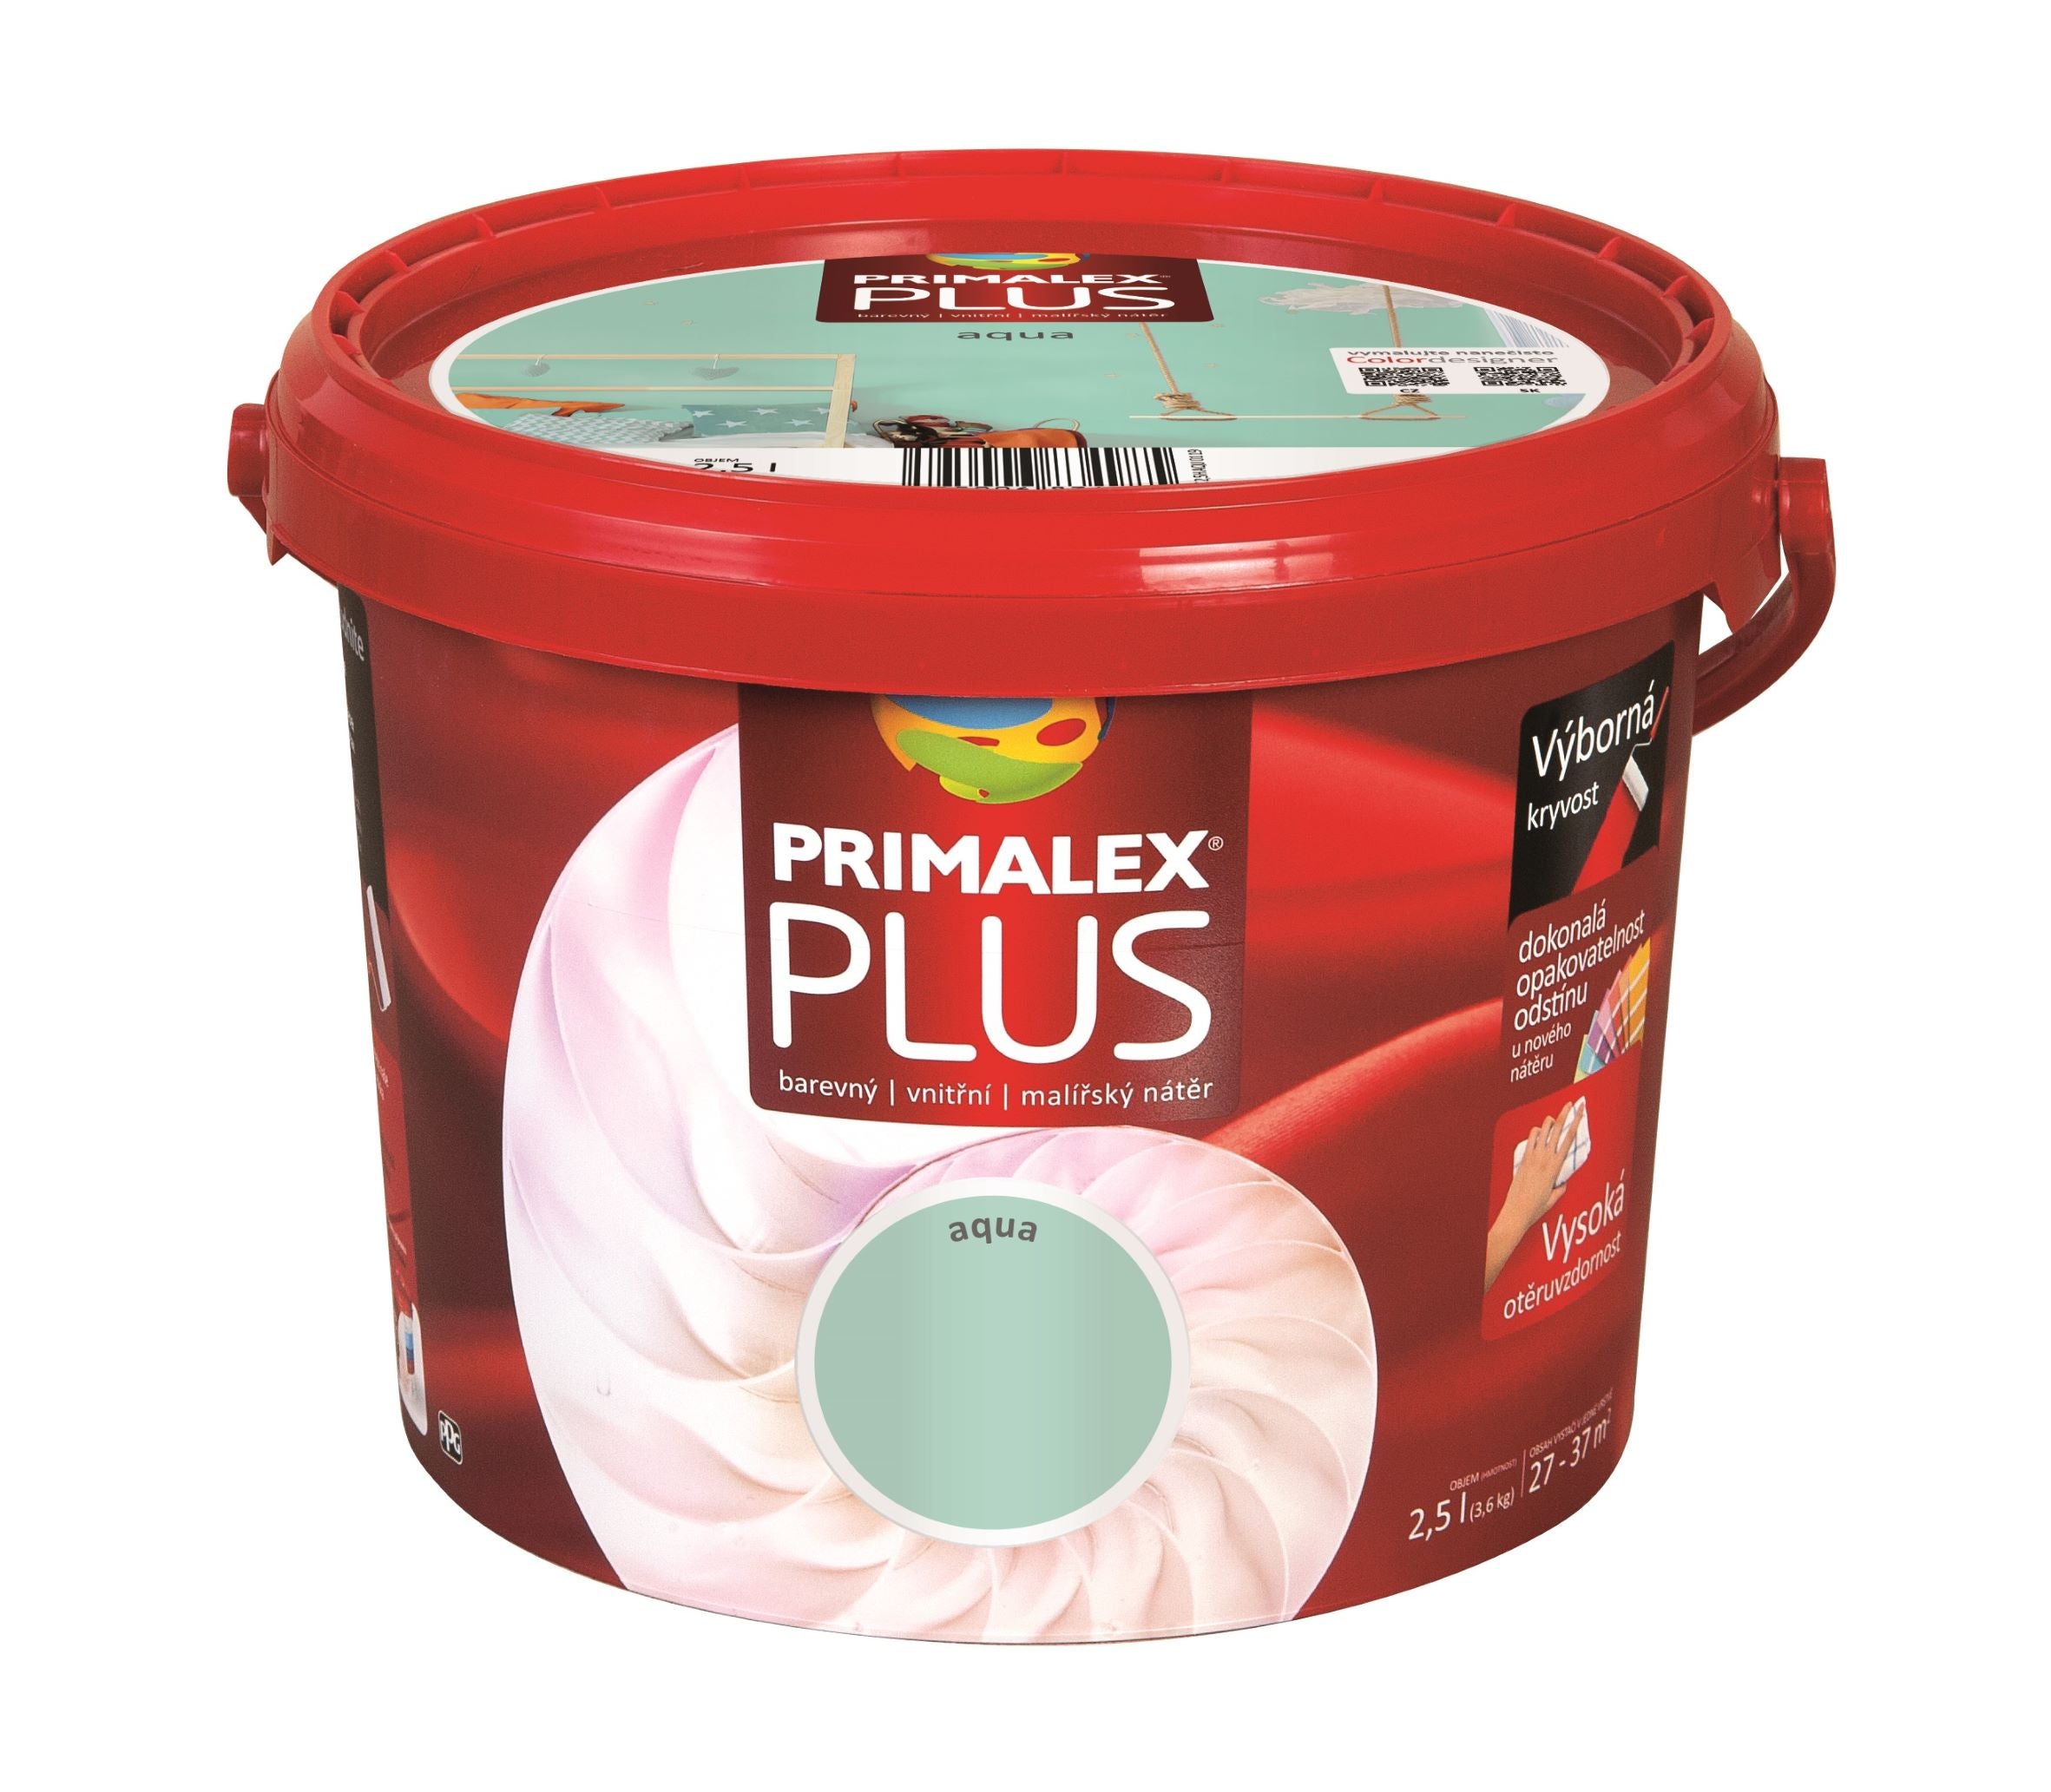 PRIMALEX PLUS farebný maliarska farba do interiéru